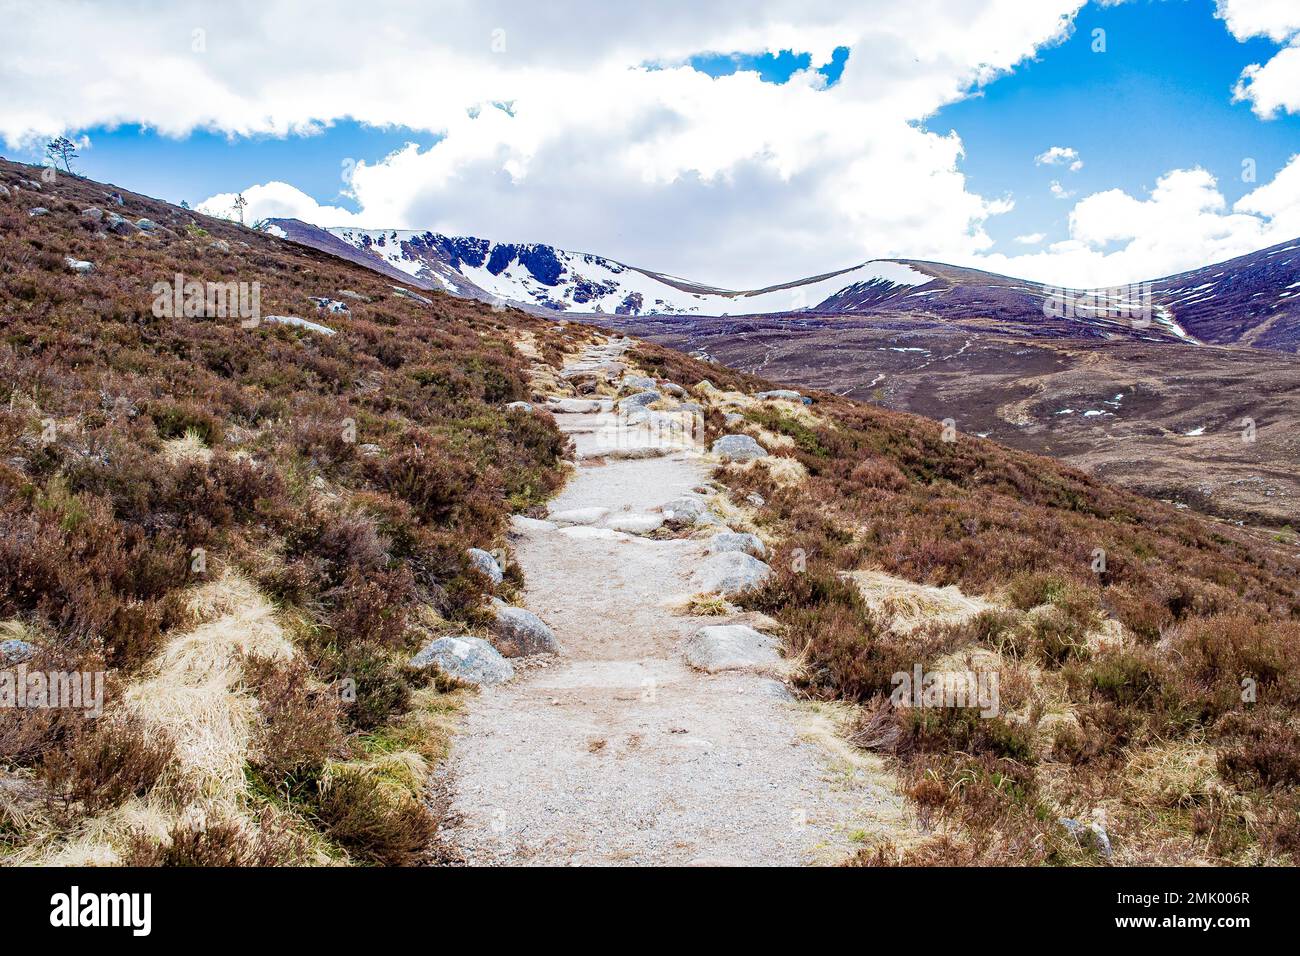 Sentier de randonnée droit, parc national de Cairngorms, Highlands écossais, Écosse, zone populaire de randonnée et de ski. Sommets enneigés, ciel bleu, rochers. Banque D'Images